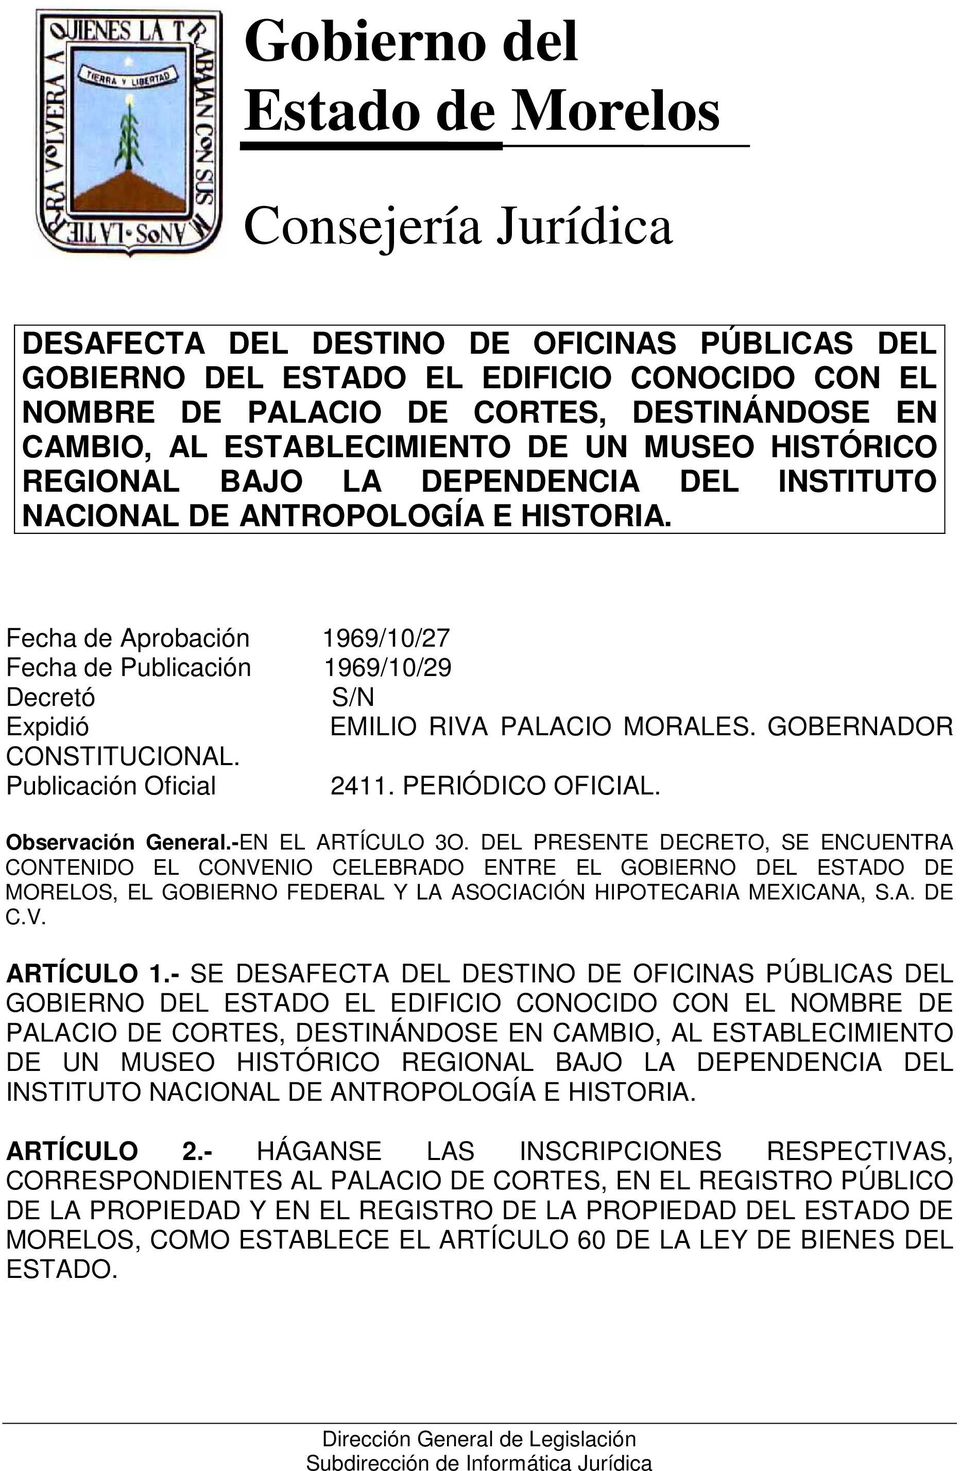 Fecha de Aprobación 1969/10/27 Fecha de Publicación 1969/10/29 Decretó S/N Expidió EMILIO RIVA PALACIO MORALES. GOBERNADOR CONSTITUCIONAL. Publicación Oficial 2411. PERIÓDICO OFICIAL.